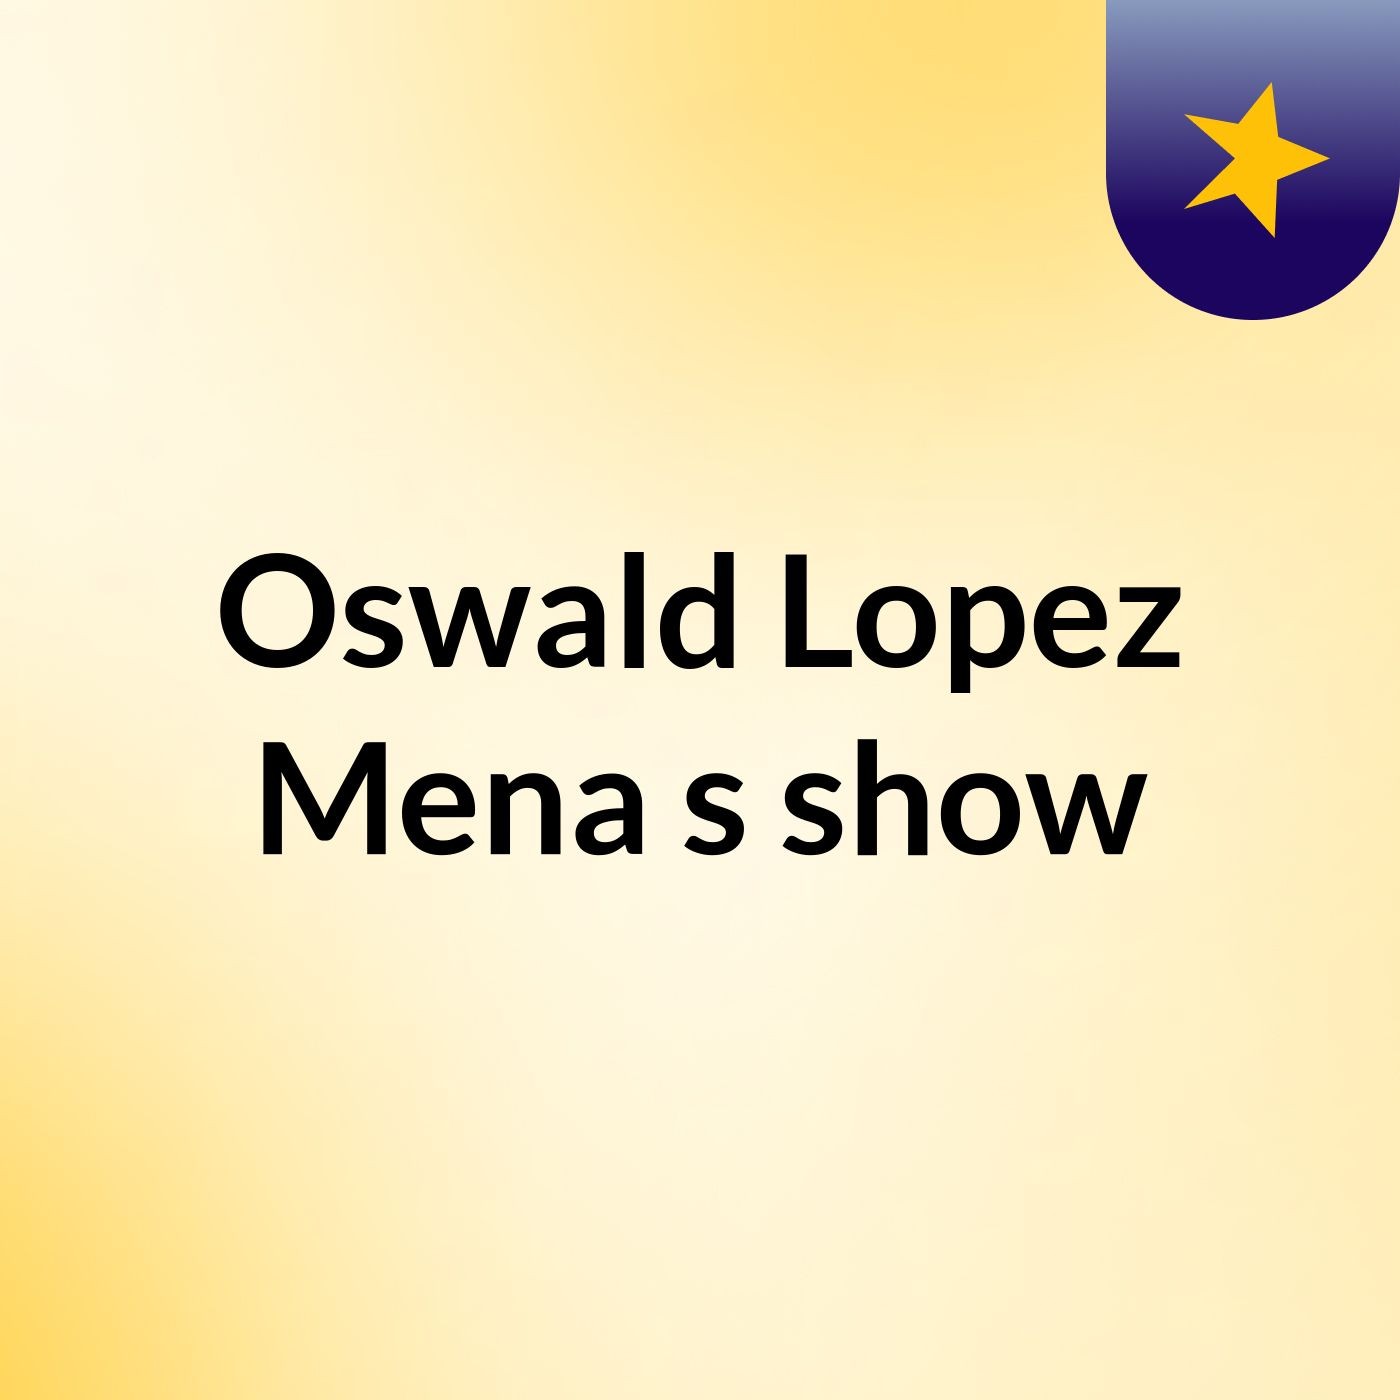 Oswald Lopez Mena's show